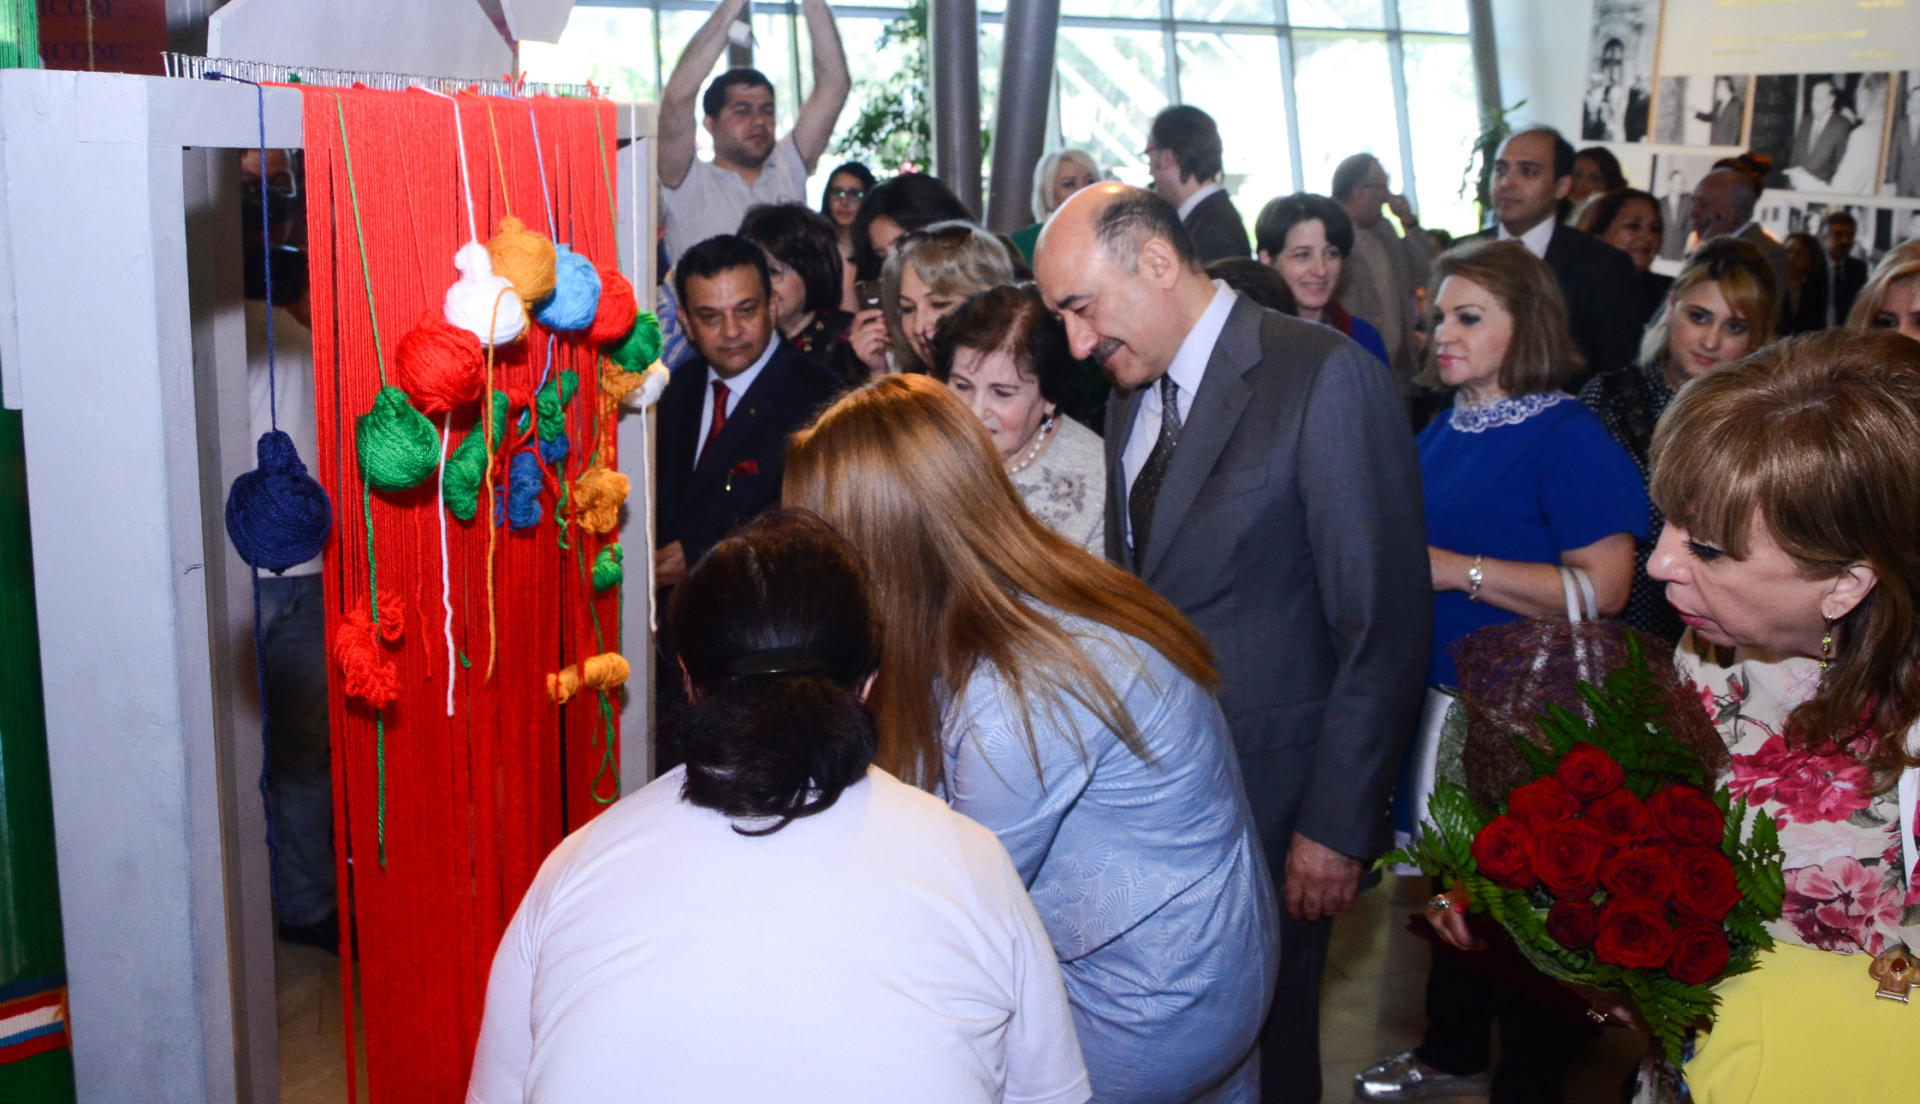 Как своими руками соткать ковер – показали в Баку (ФОТО)